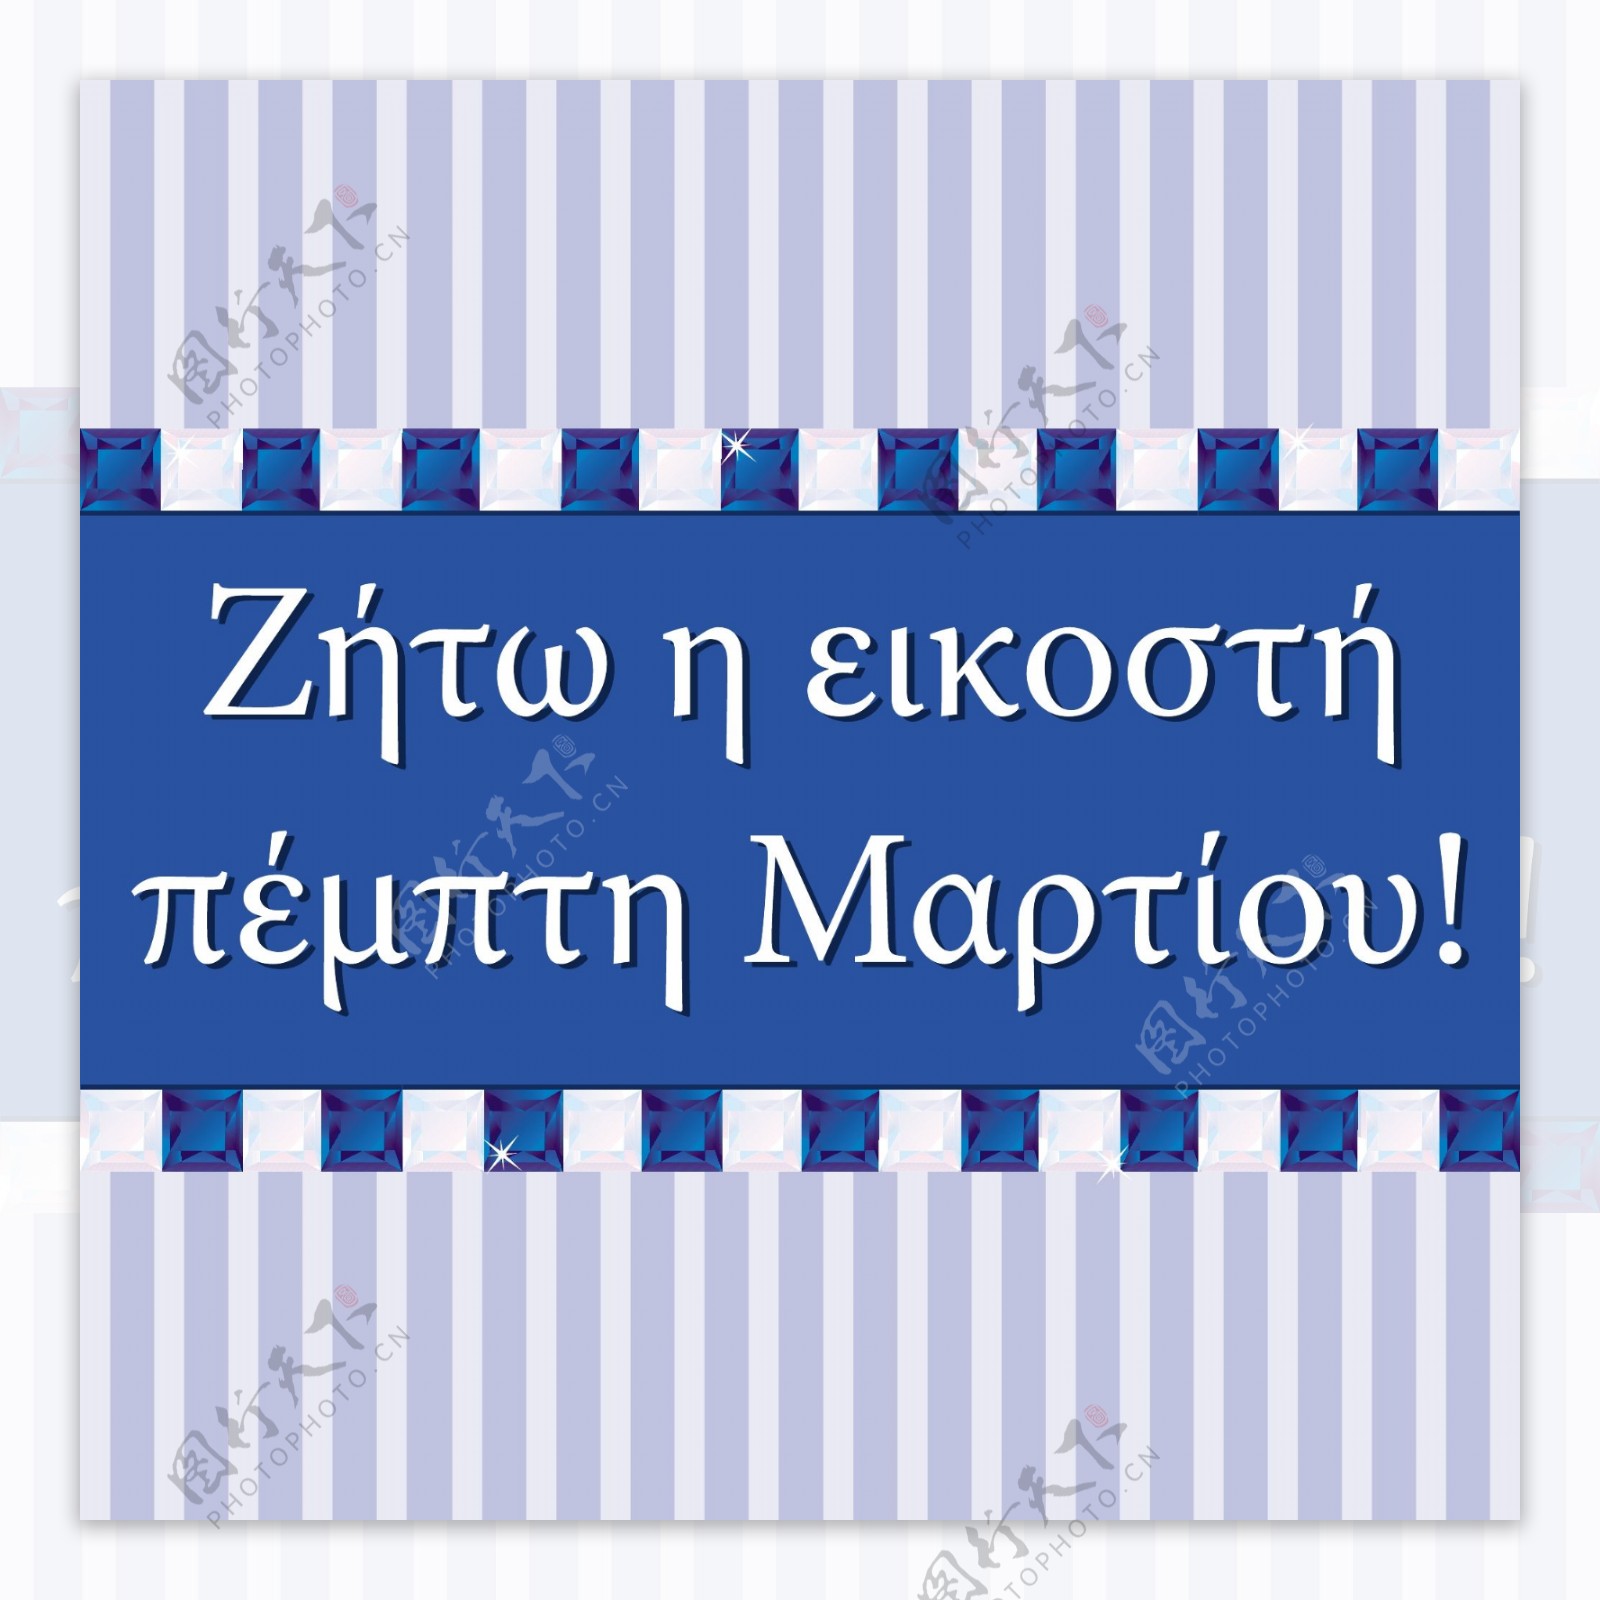 希腊独立日宝石卡矢量格式